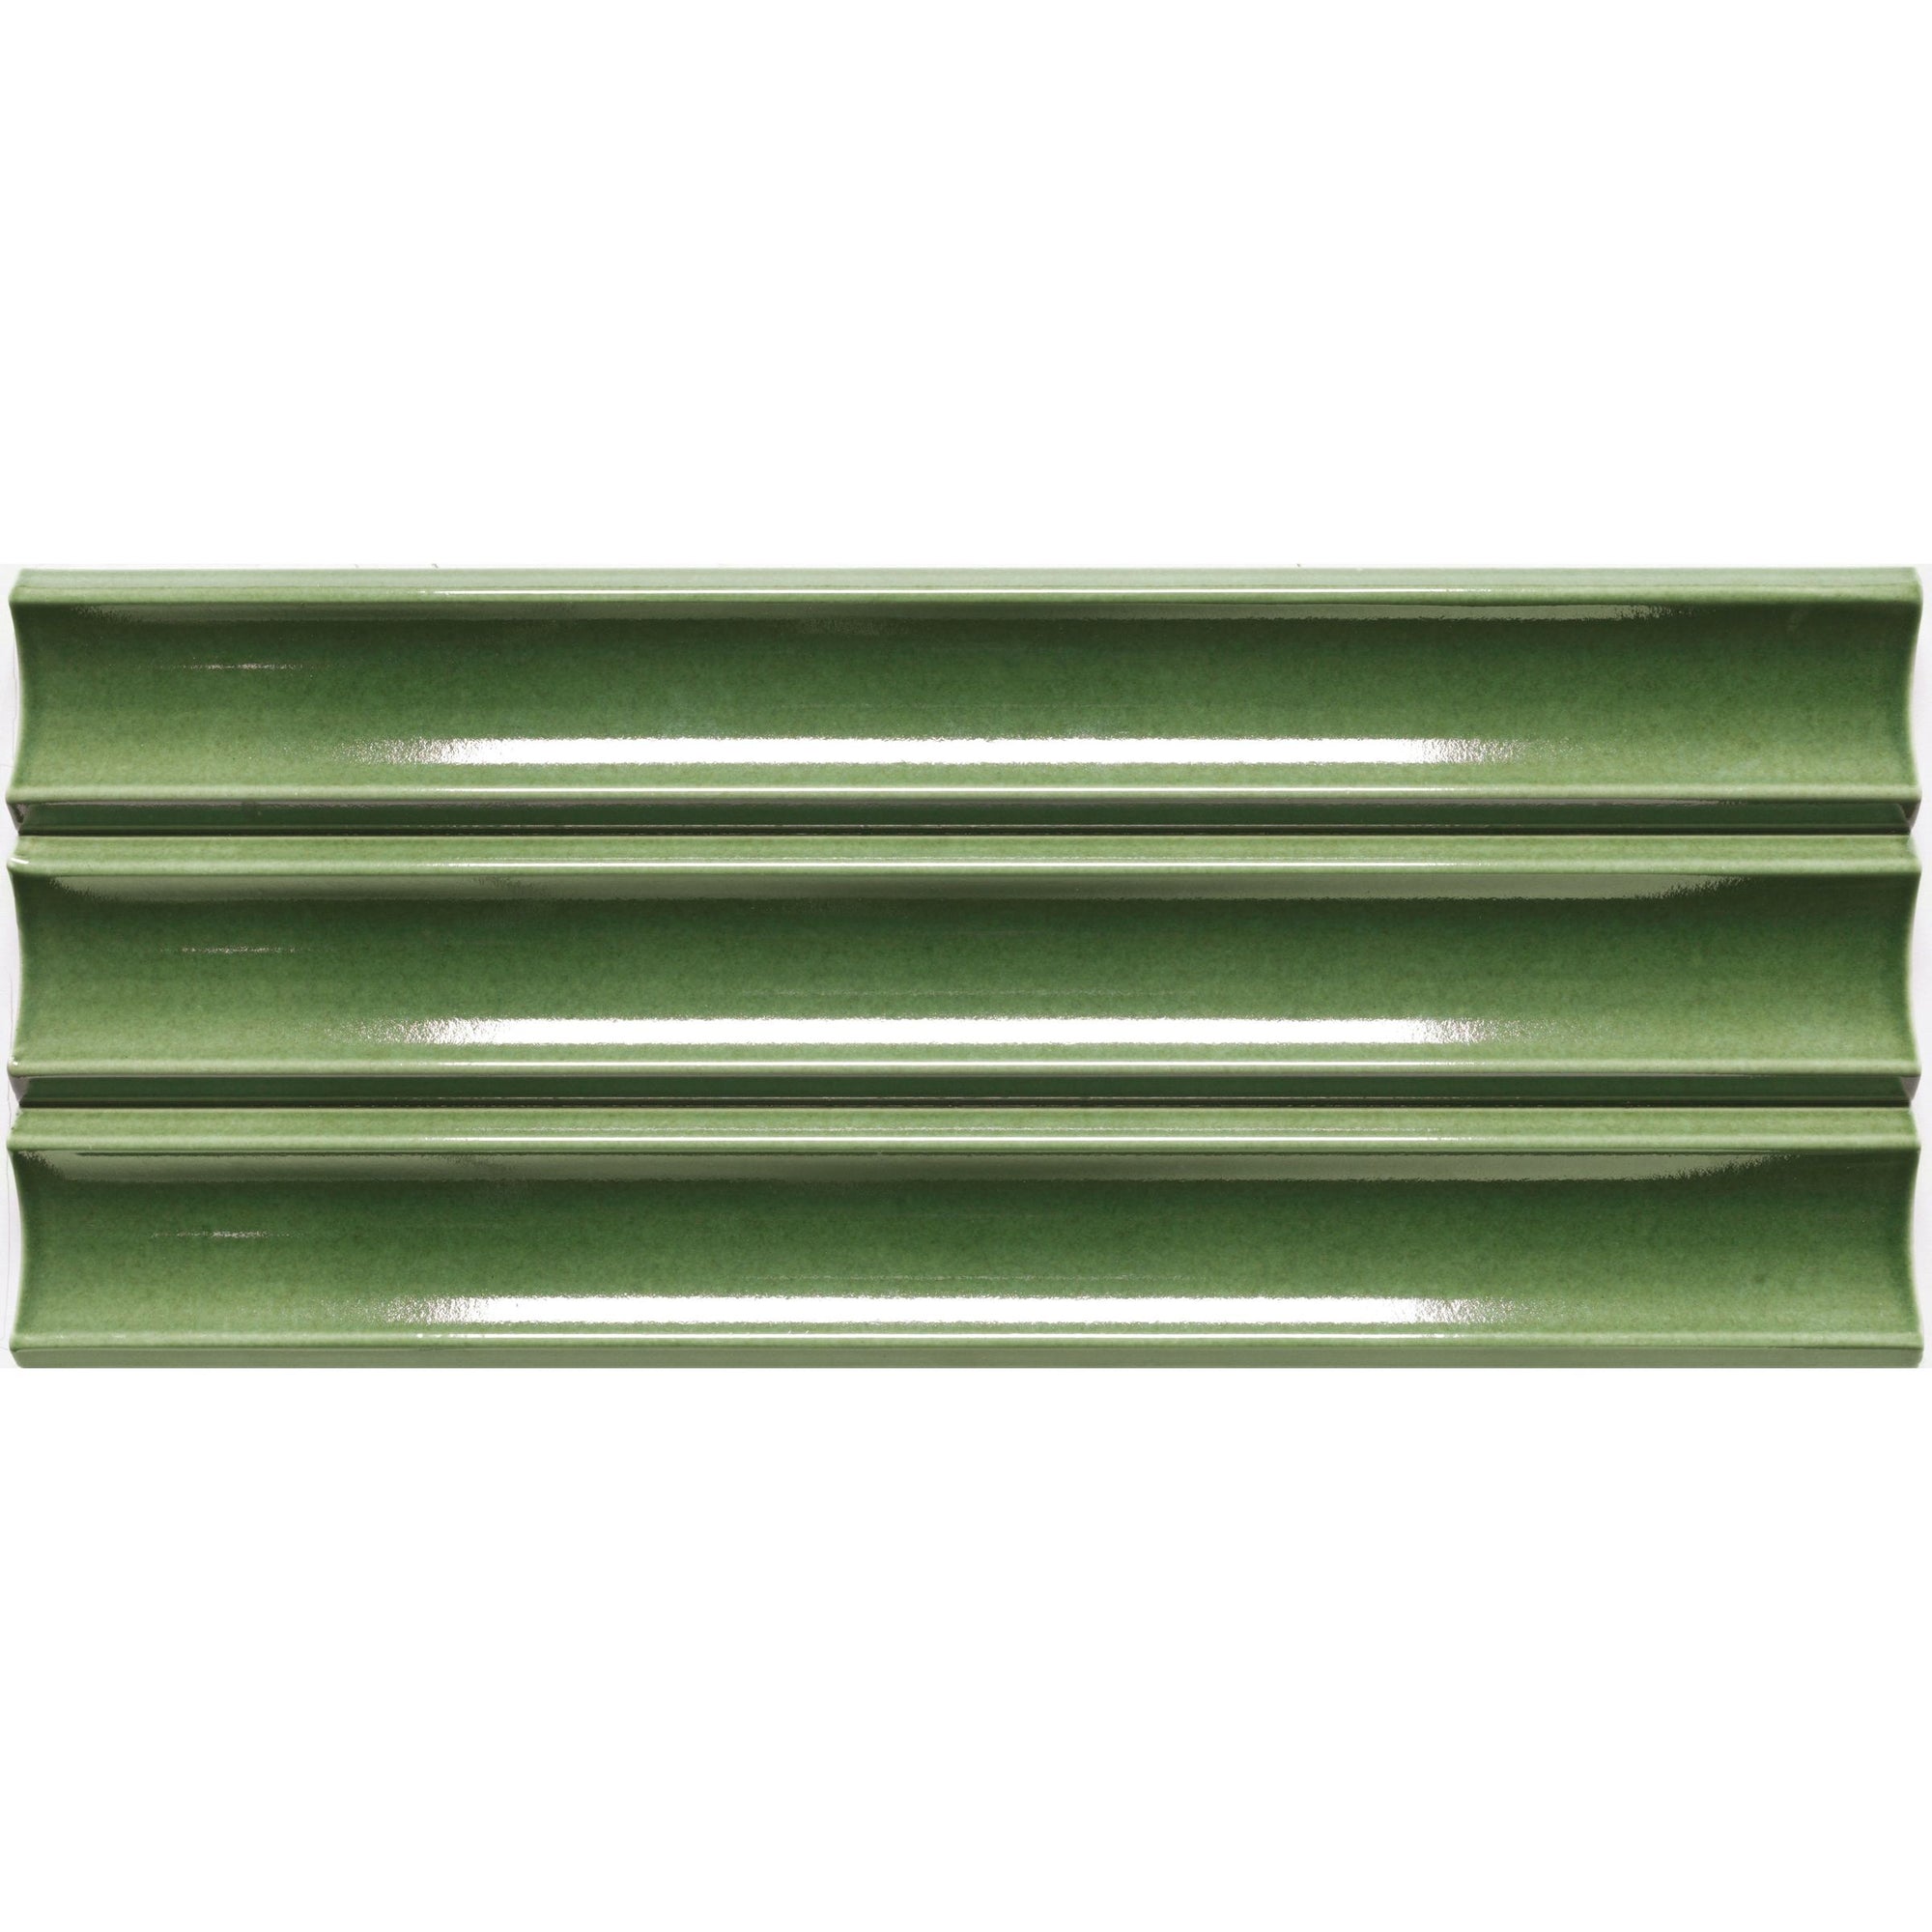 Emser Tile - Tubage - 7" x 16" Glazed Porcelain Tile - Green